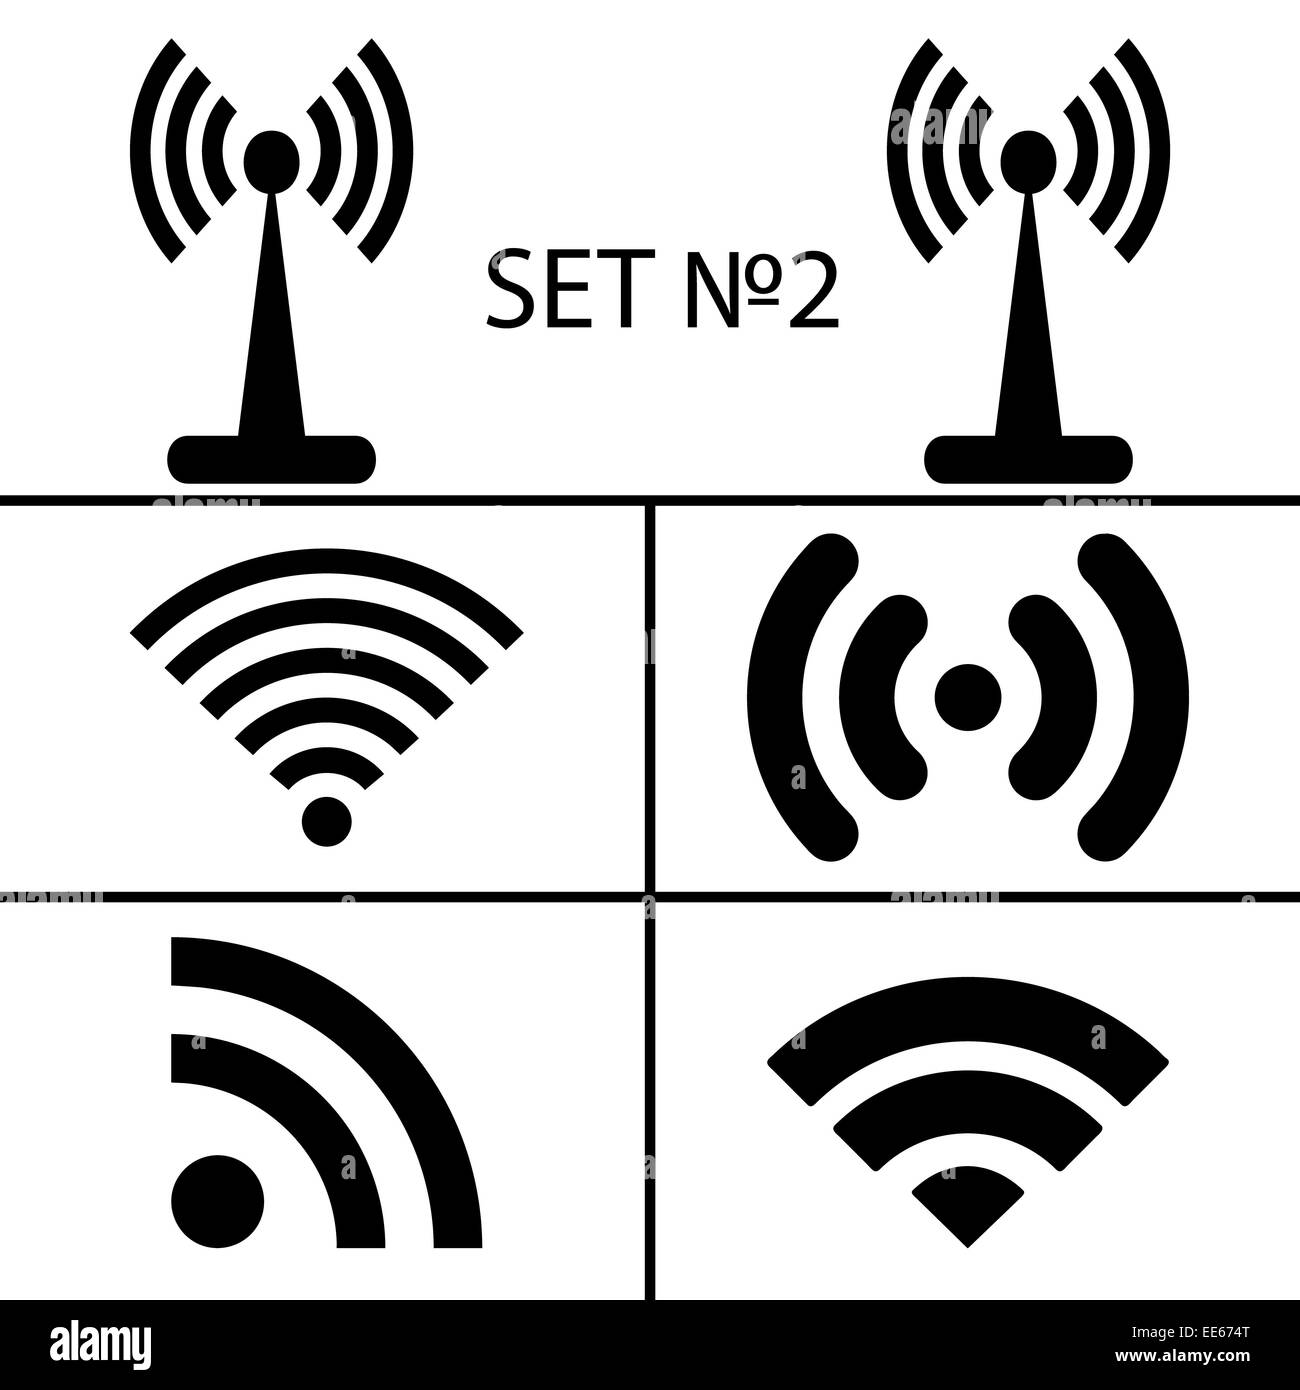 Set 2. Vierzehn verschiedene schwarze Wireless und WLAN-Symbole für remote-Zugriff-Kommunikation über Radiowellen. Vektor-Illustration EPS10 Stockfoto